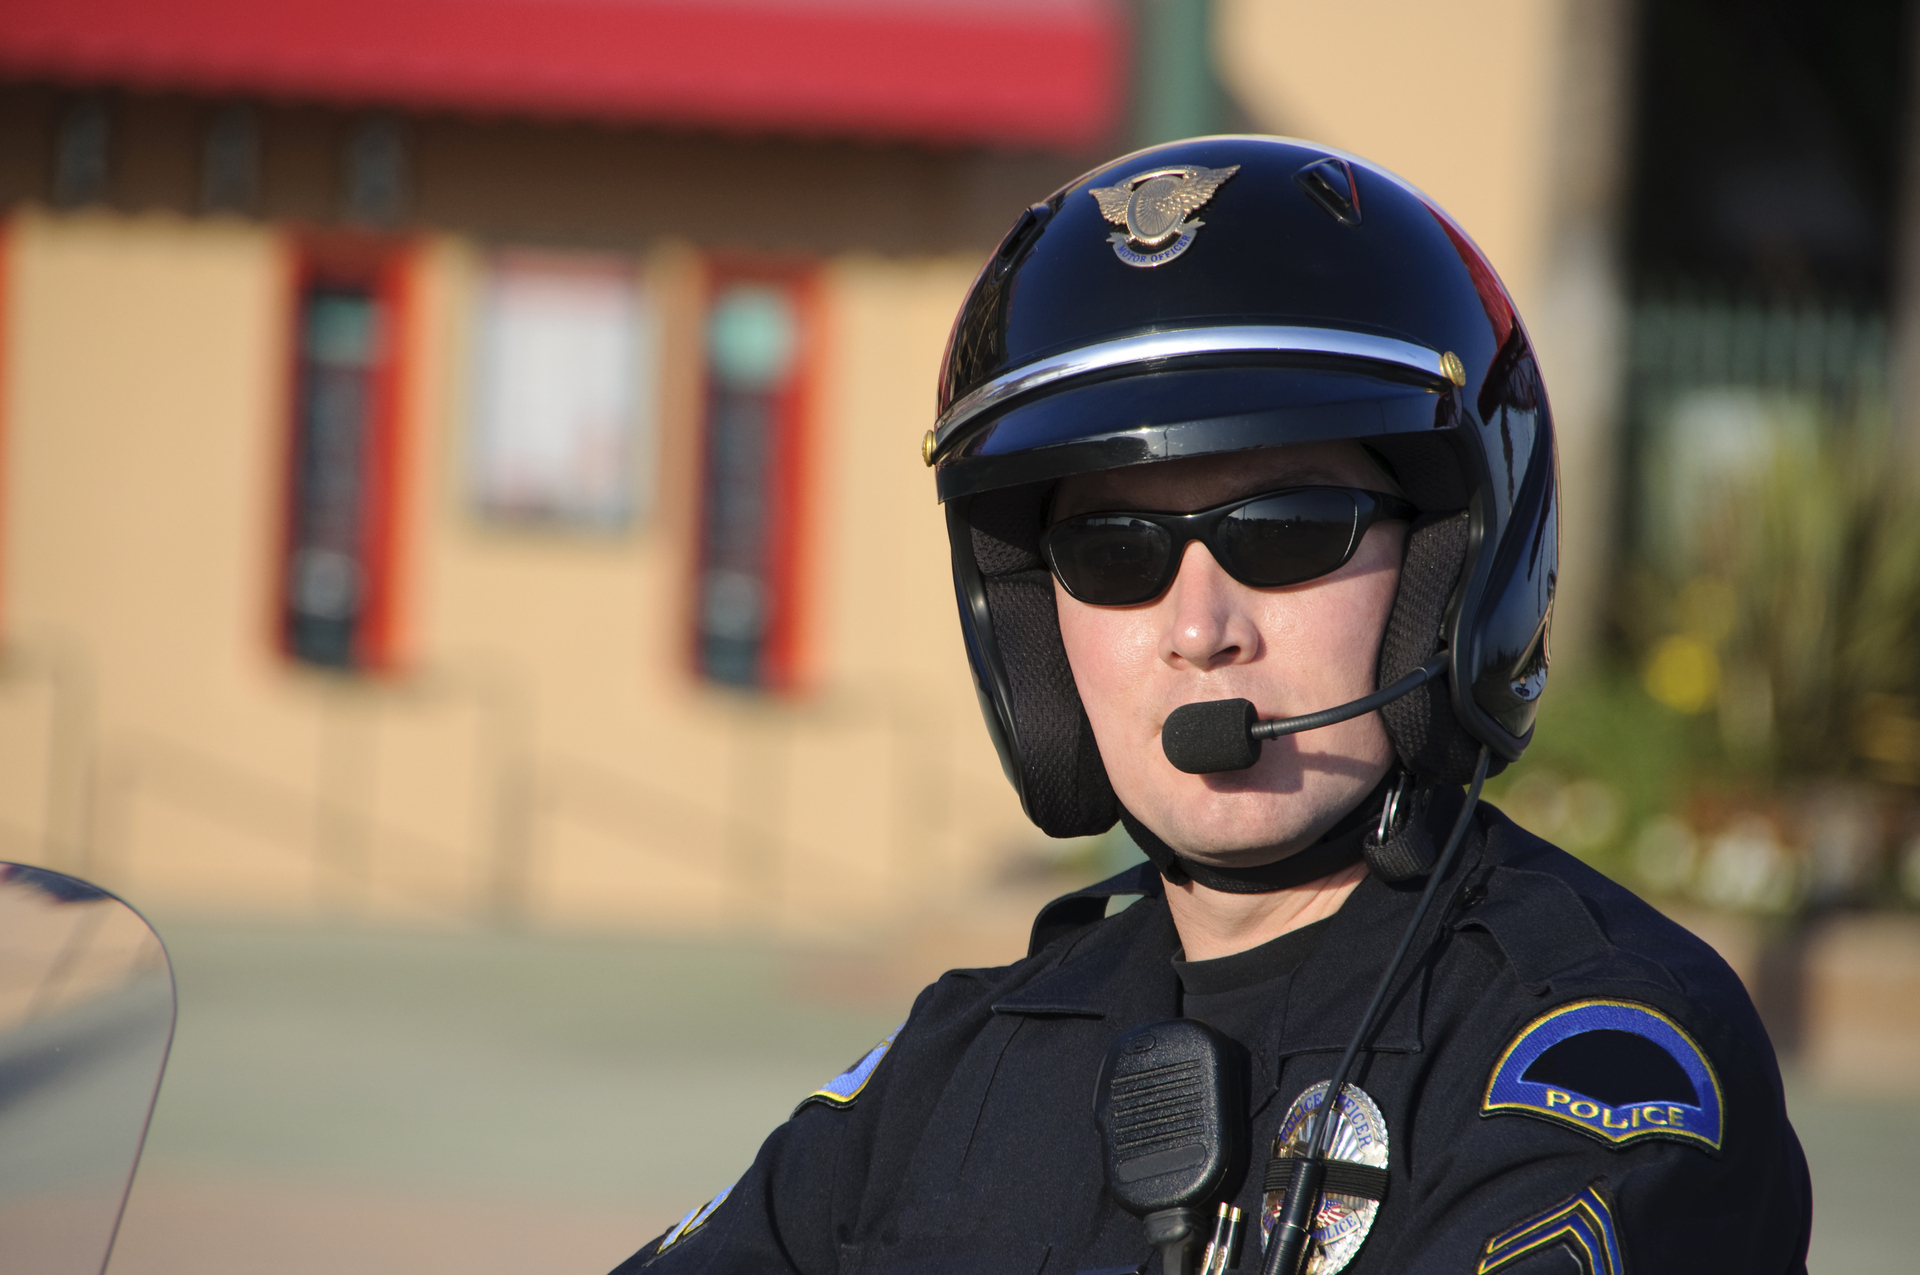 Zarobki policjantów – ile można zarobić w policji?